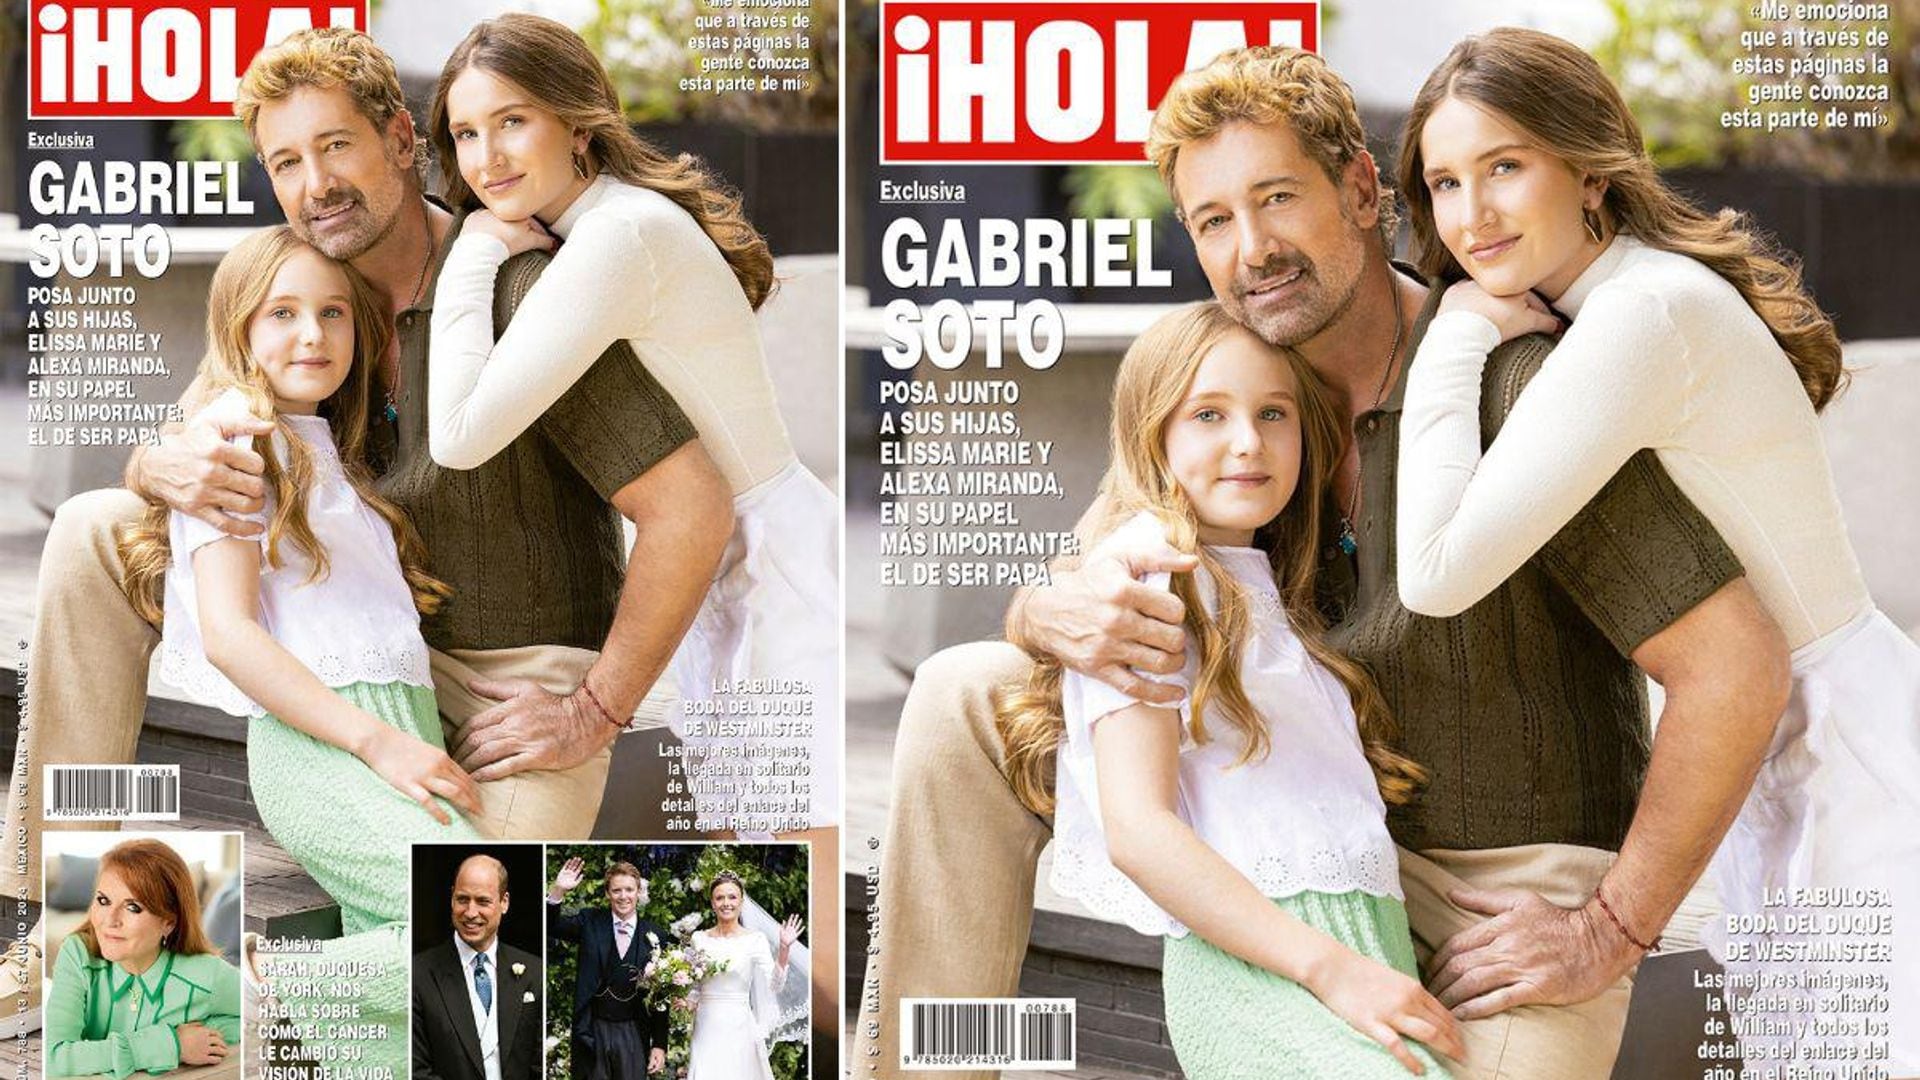 En ¡HOLA!, Gabriel Soto posa junto a sus hijas, Elissa Marie y Alexa Miranda